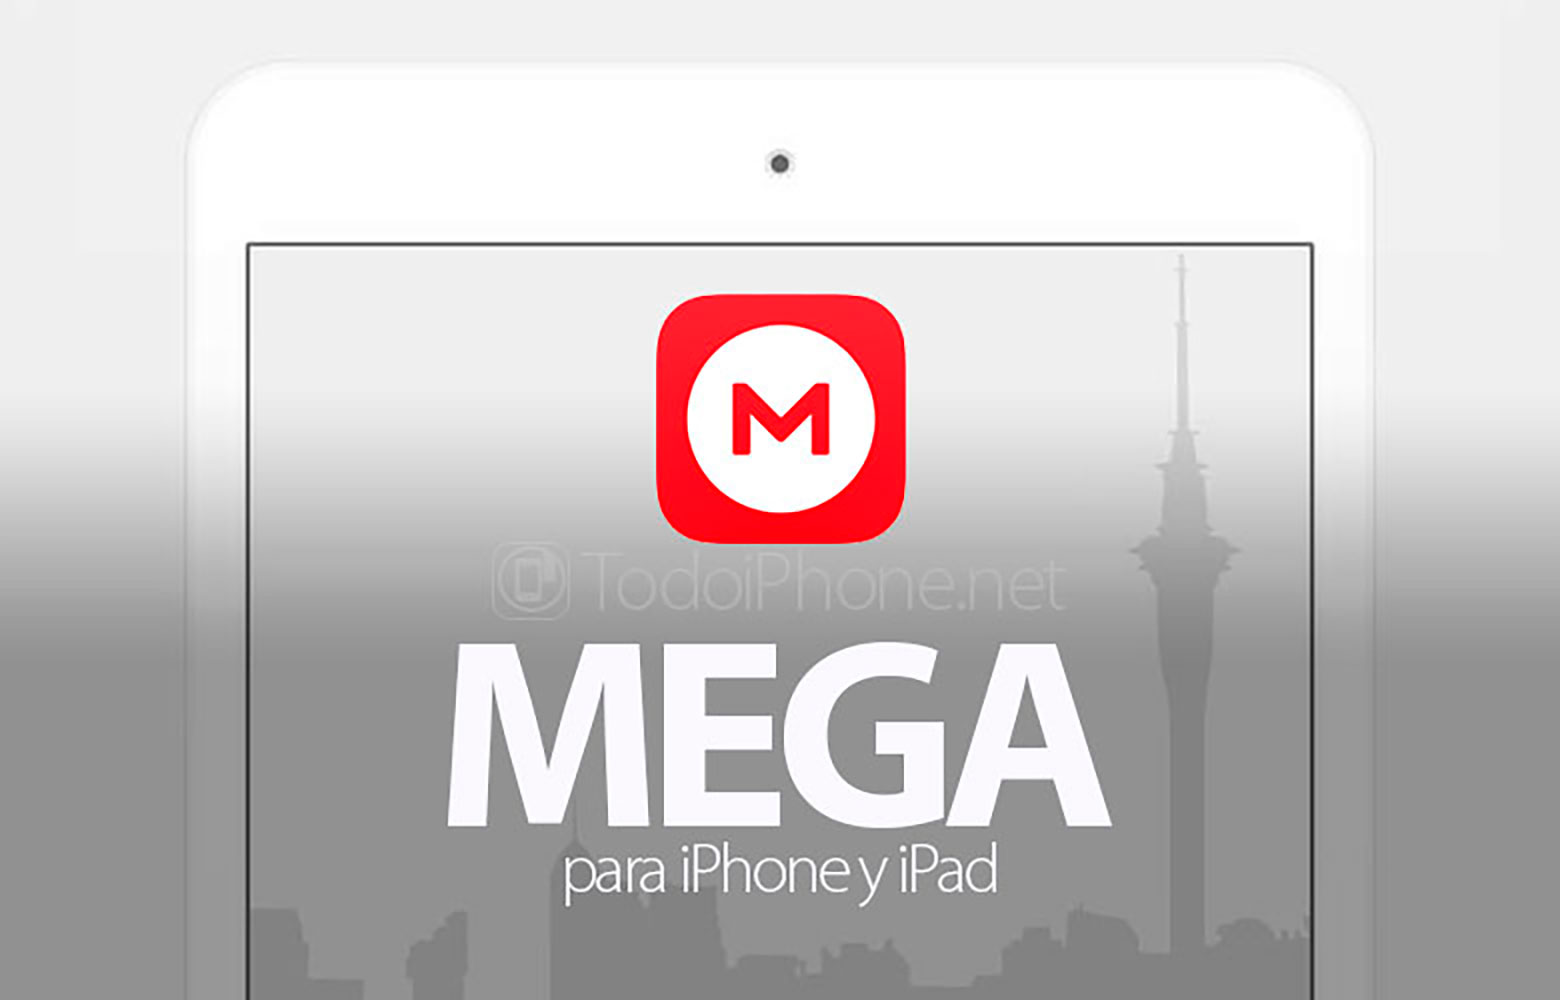 MEGA поставляется с новыми функциями для iPhone и iPad 2